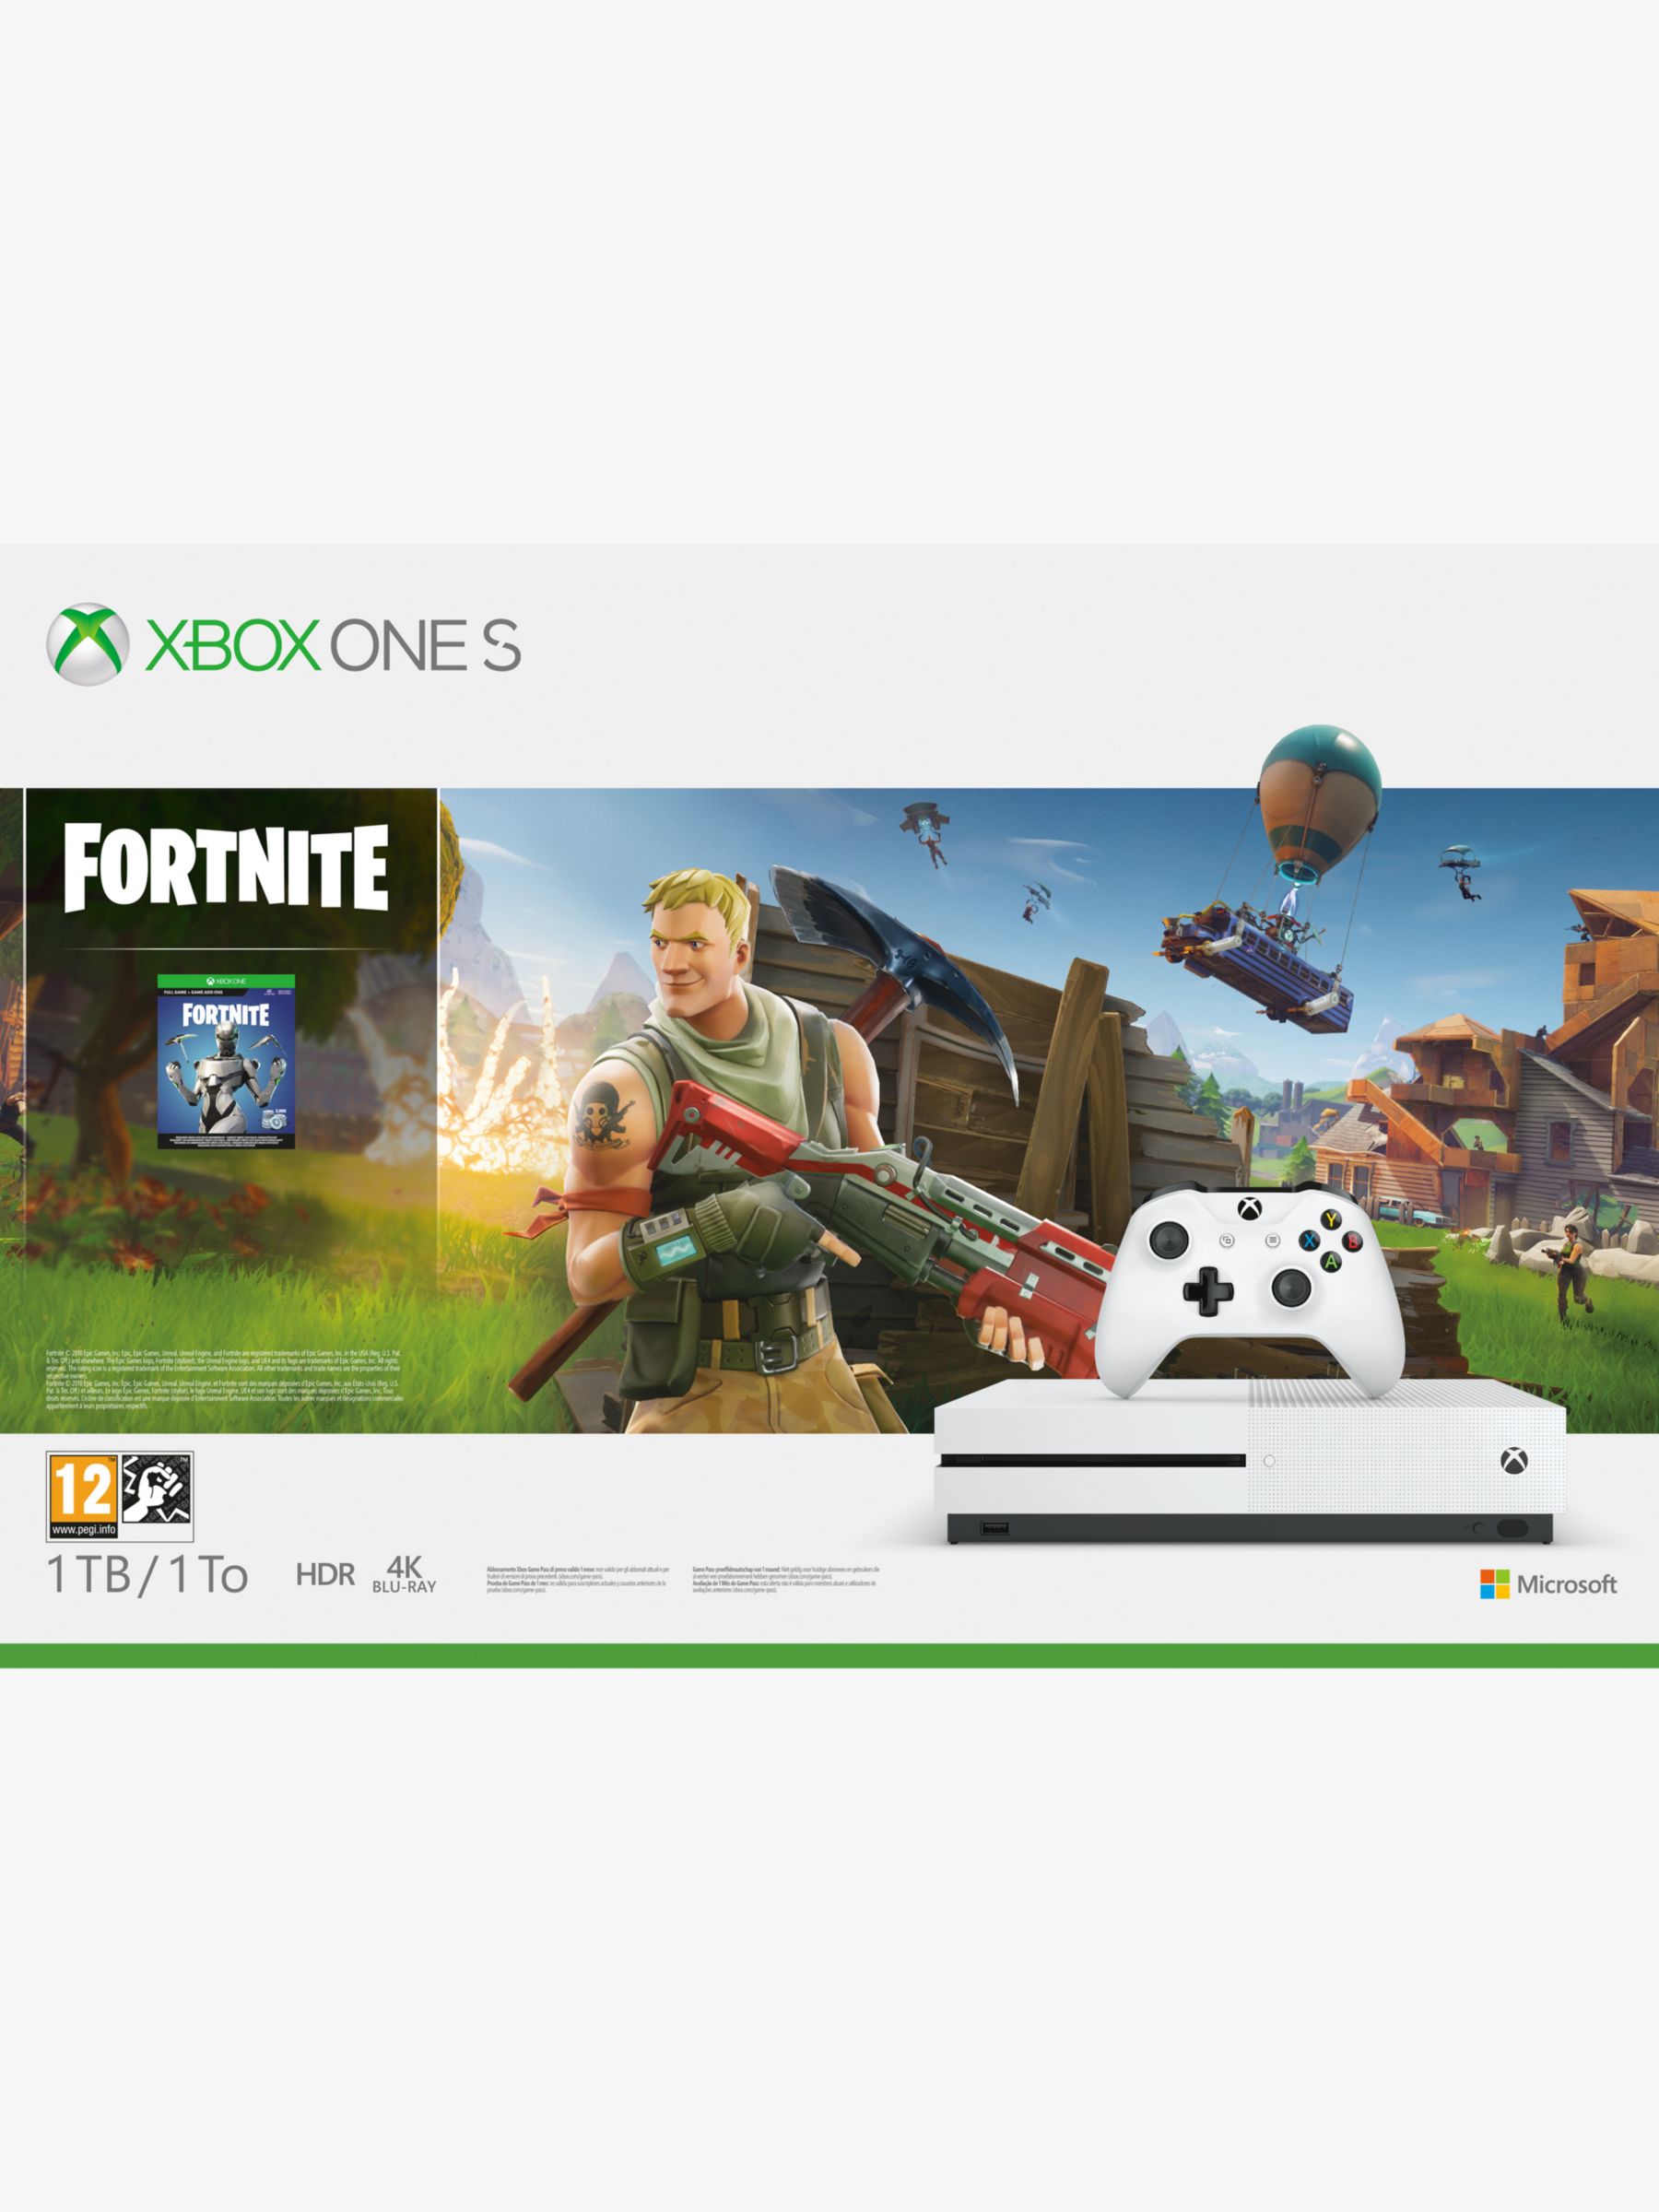 Fortnite Free Korean Skin Xbox One